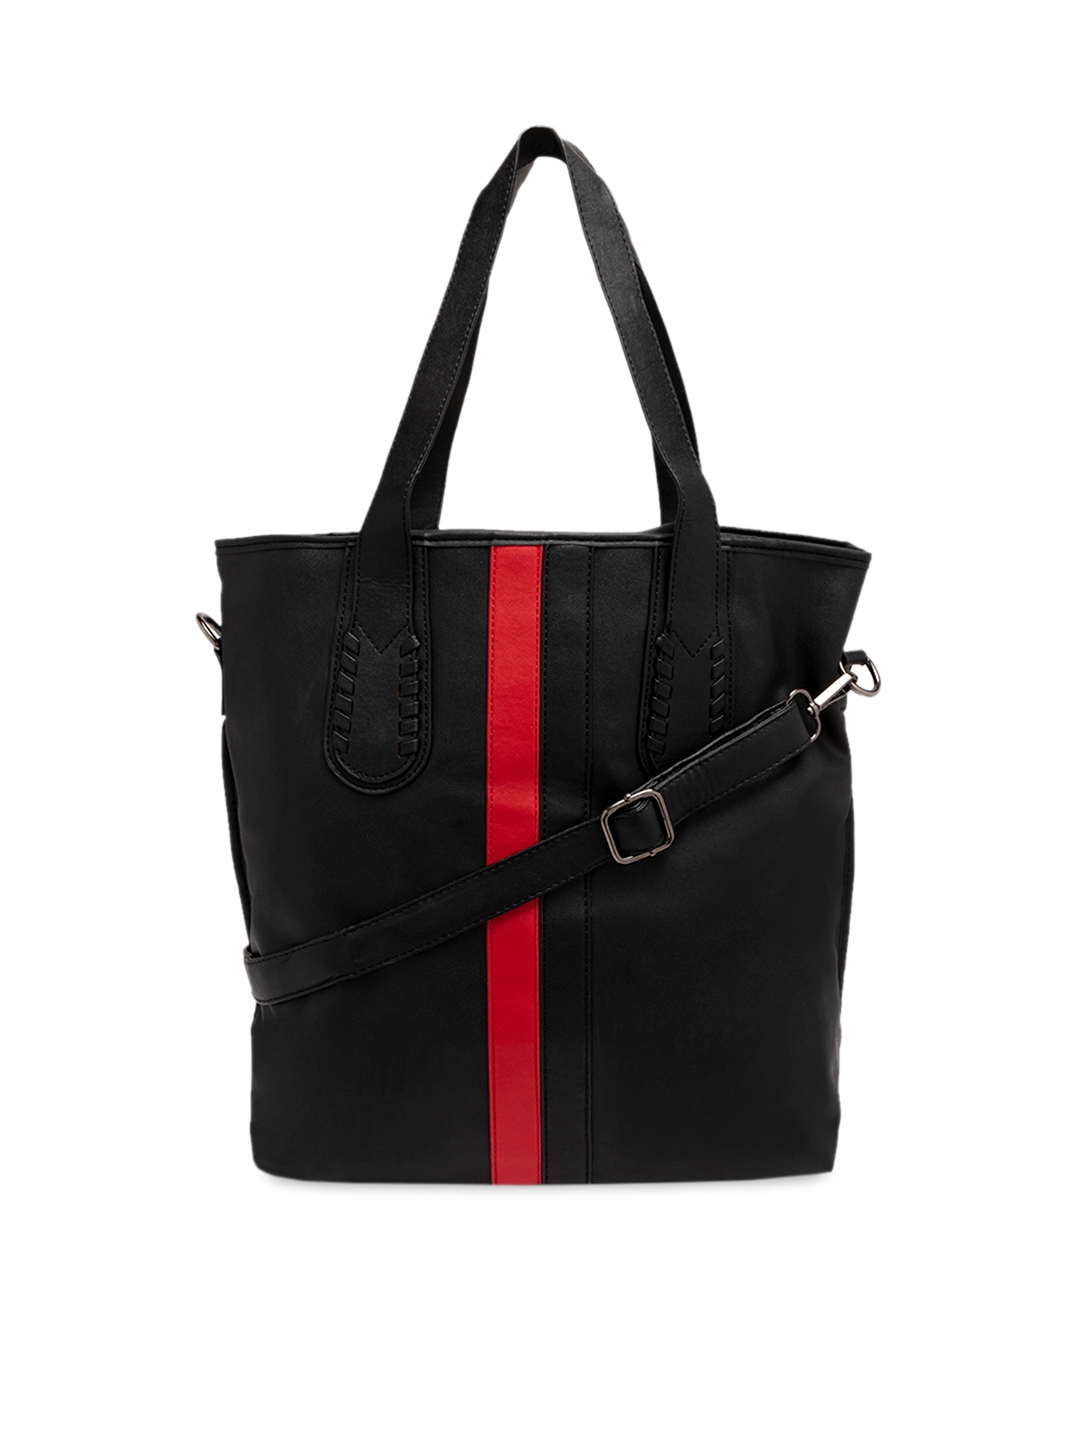 Satchel Bags Black   Red Solid Handheld Bag